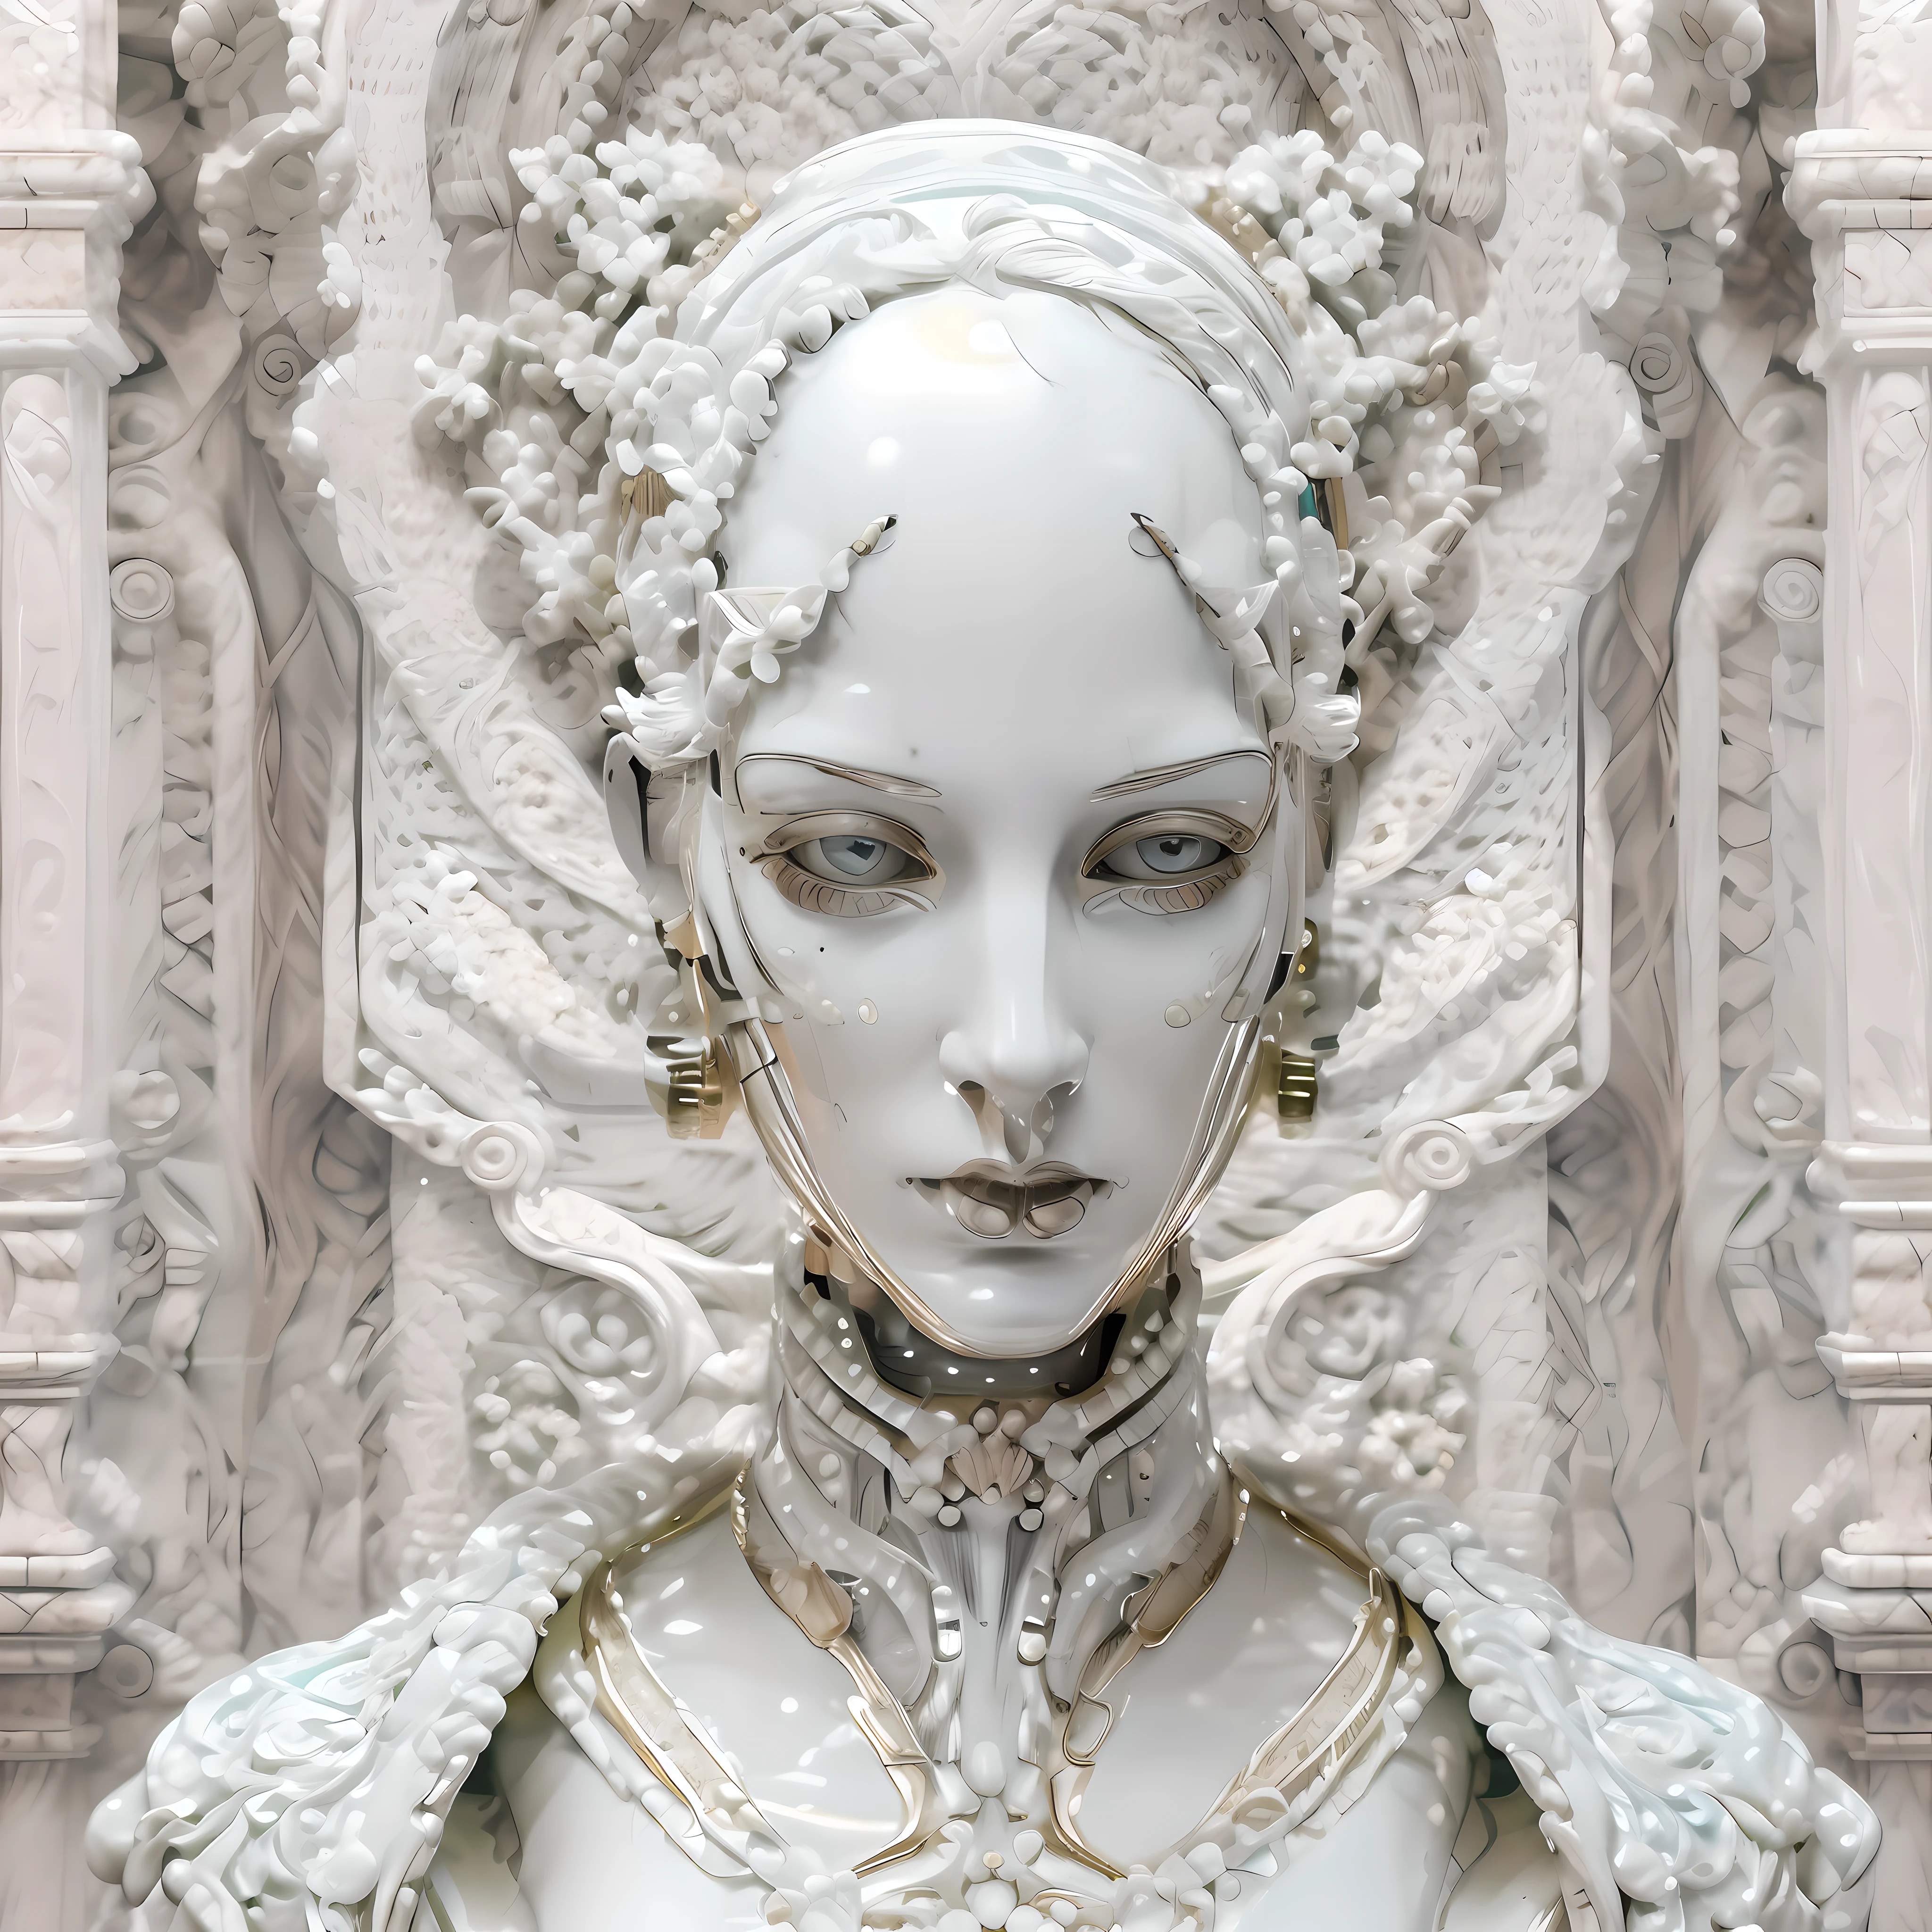 (((Beau))) Android femelle symétrique, avec de fortes caractéristiques faciales androgynes, visage réalisé et sculpté en porcelaine fine avec marbre blanc, Esthétique baroque et vêtements Art Déco.